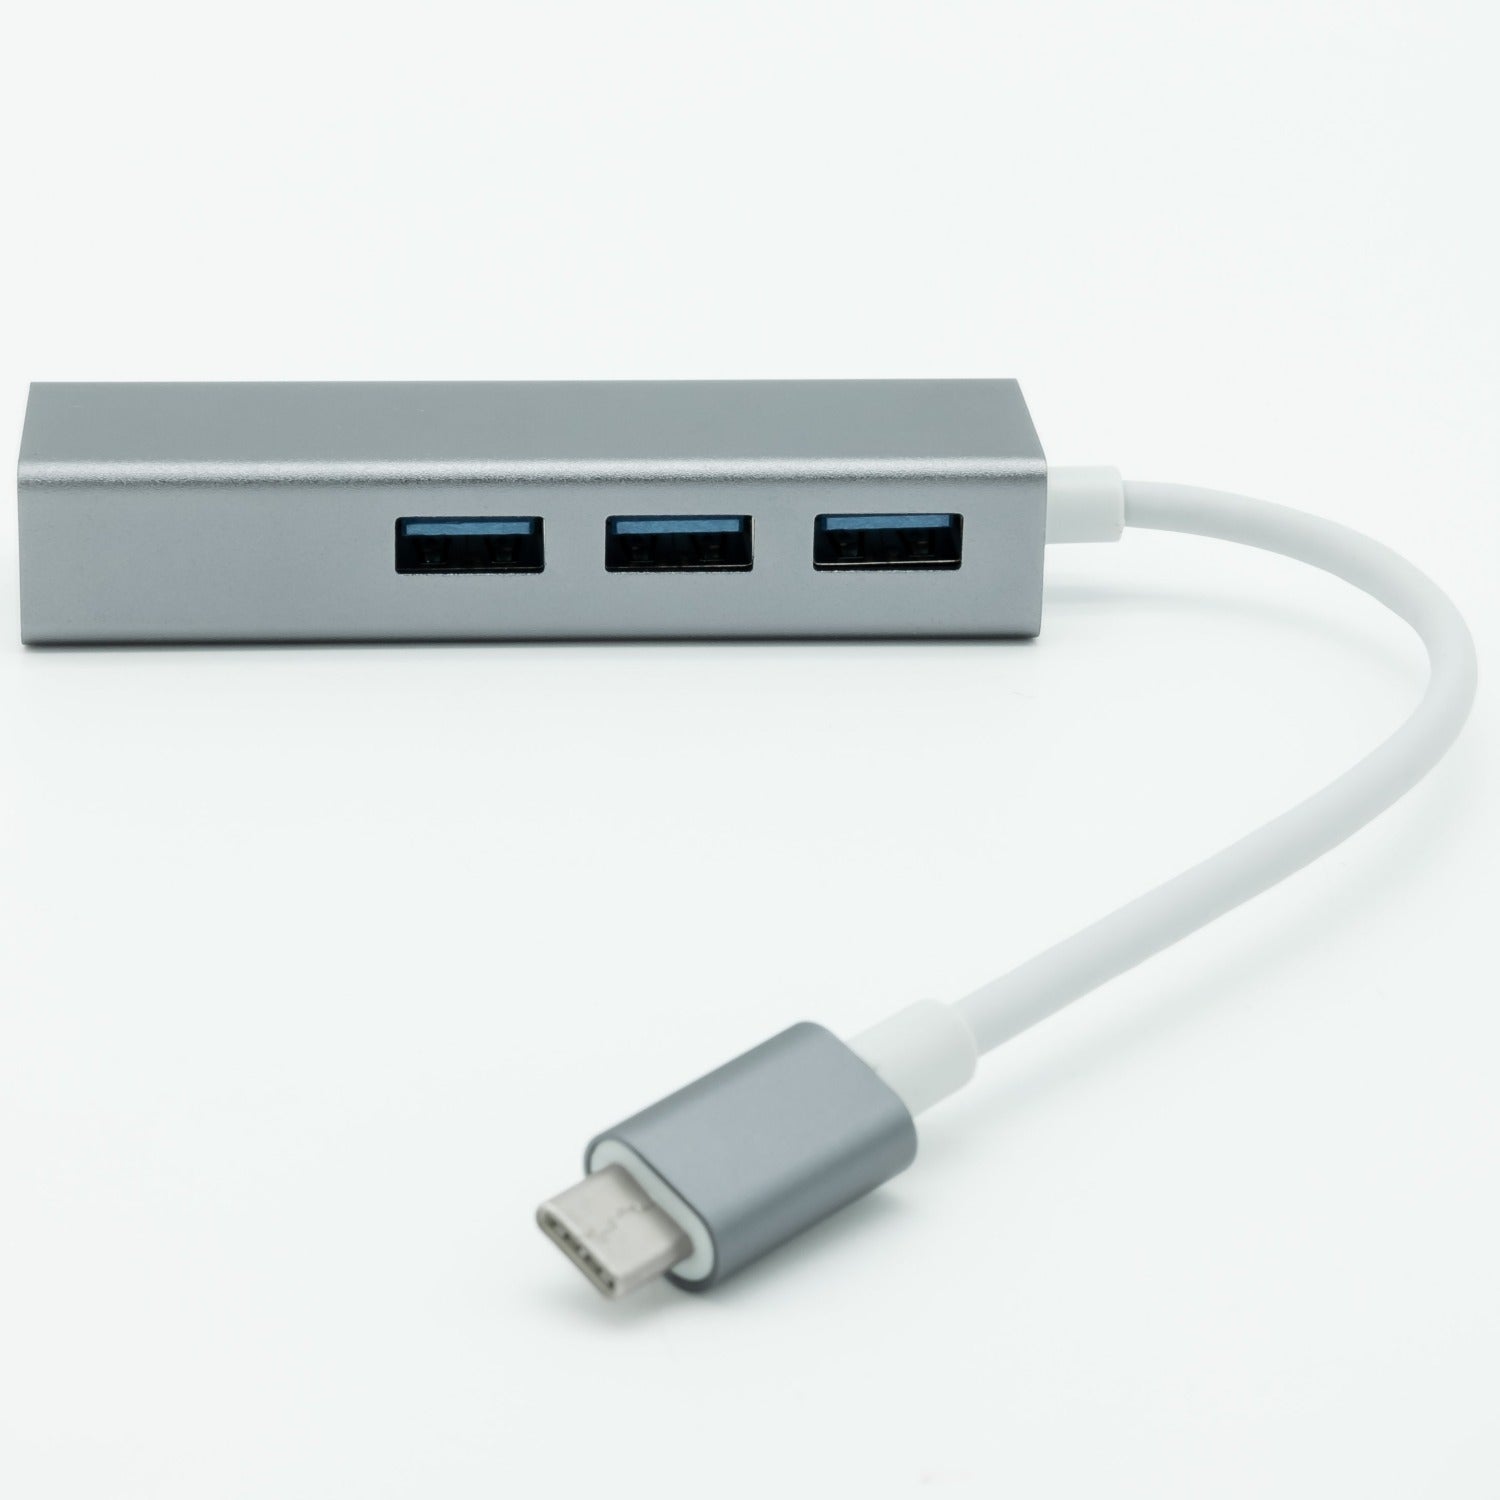 USB Type-C to Gigabit LAN and USB3 Hub Adapter